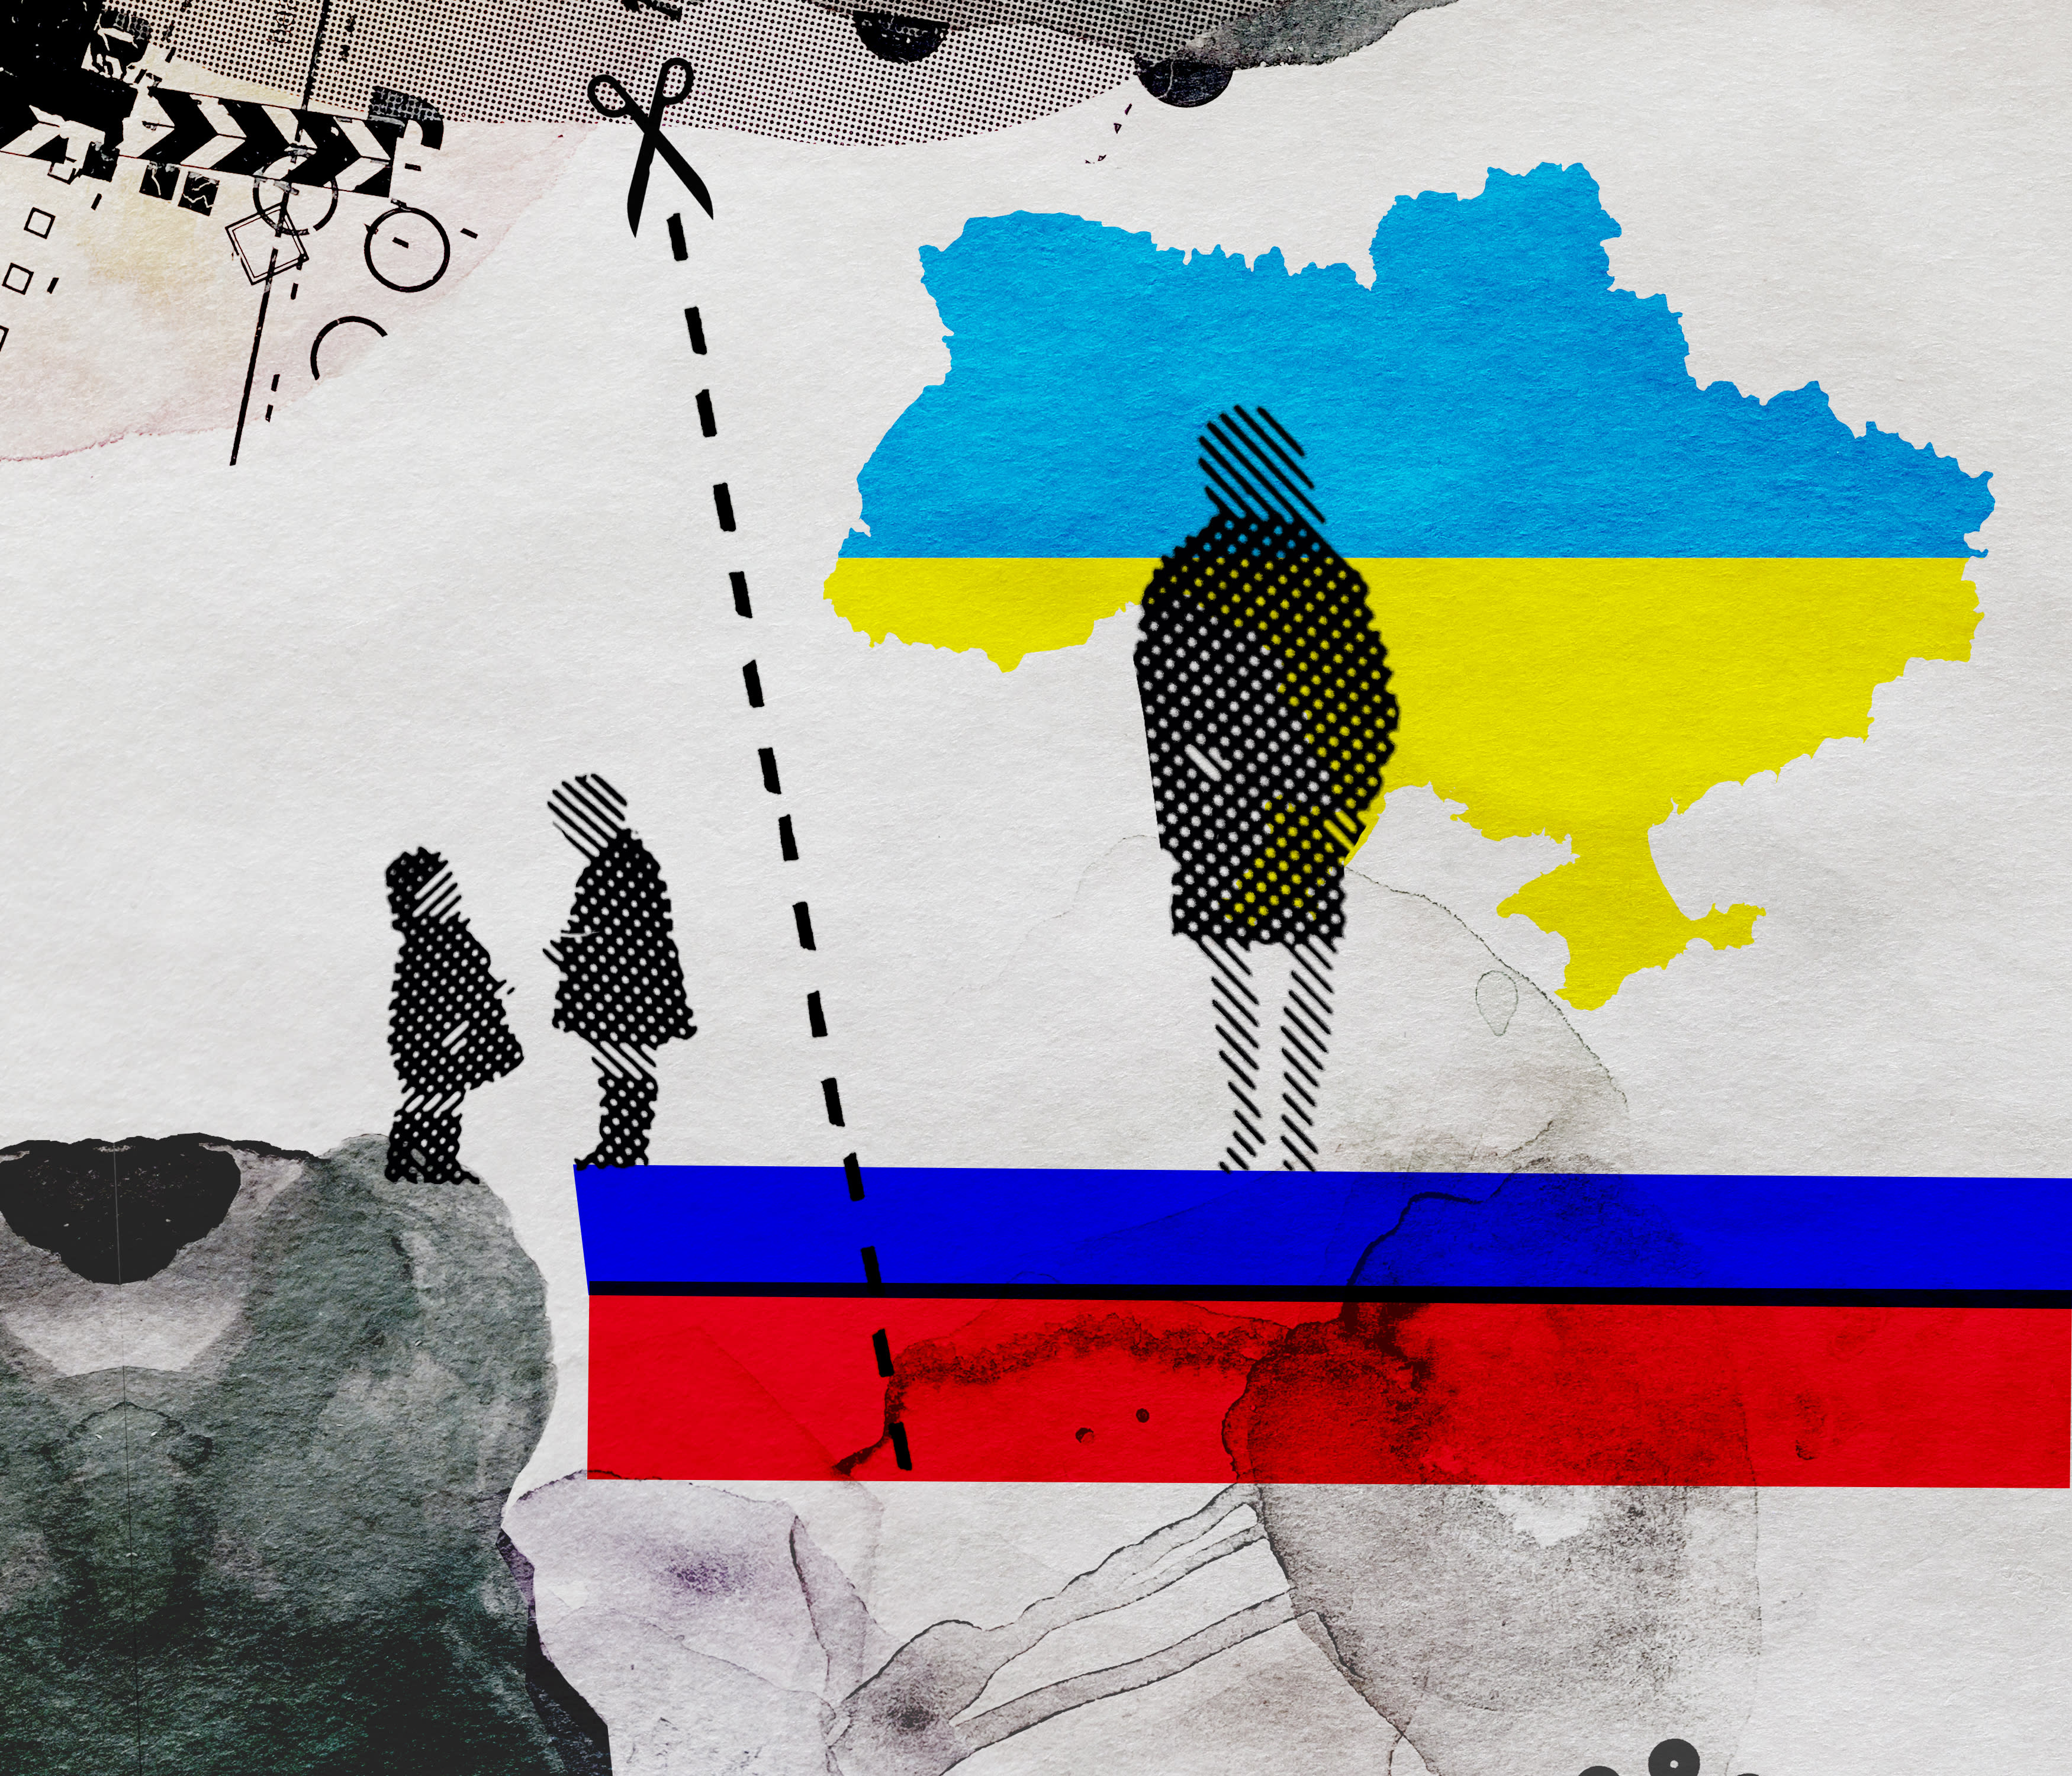 تحتجز خدمات الأطفال الفنلندية الأطفال الأوكرانيين أثناء ذهاب الأم للتسوق ، روسيا تستشهد بقضية في الدعاية المعادية للغرب